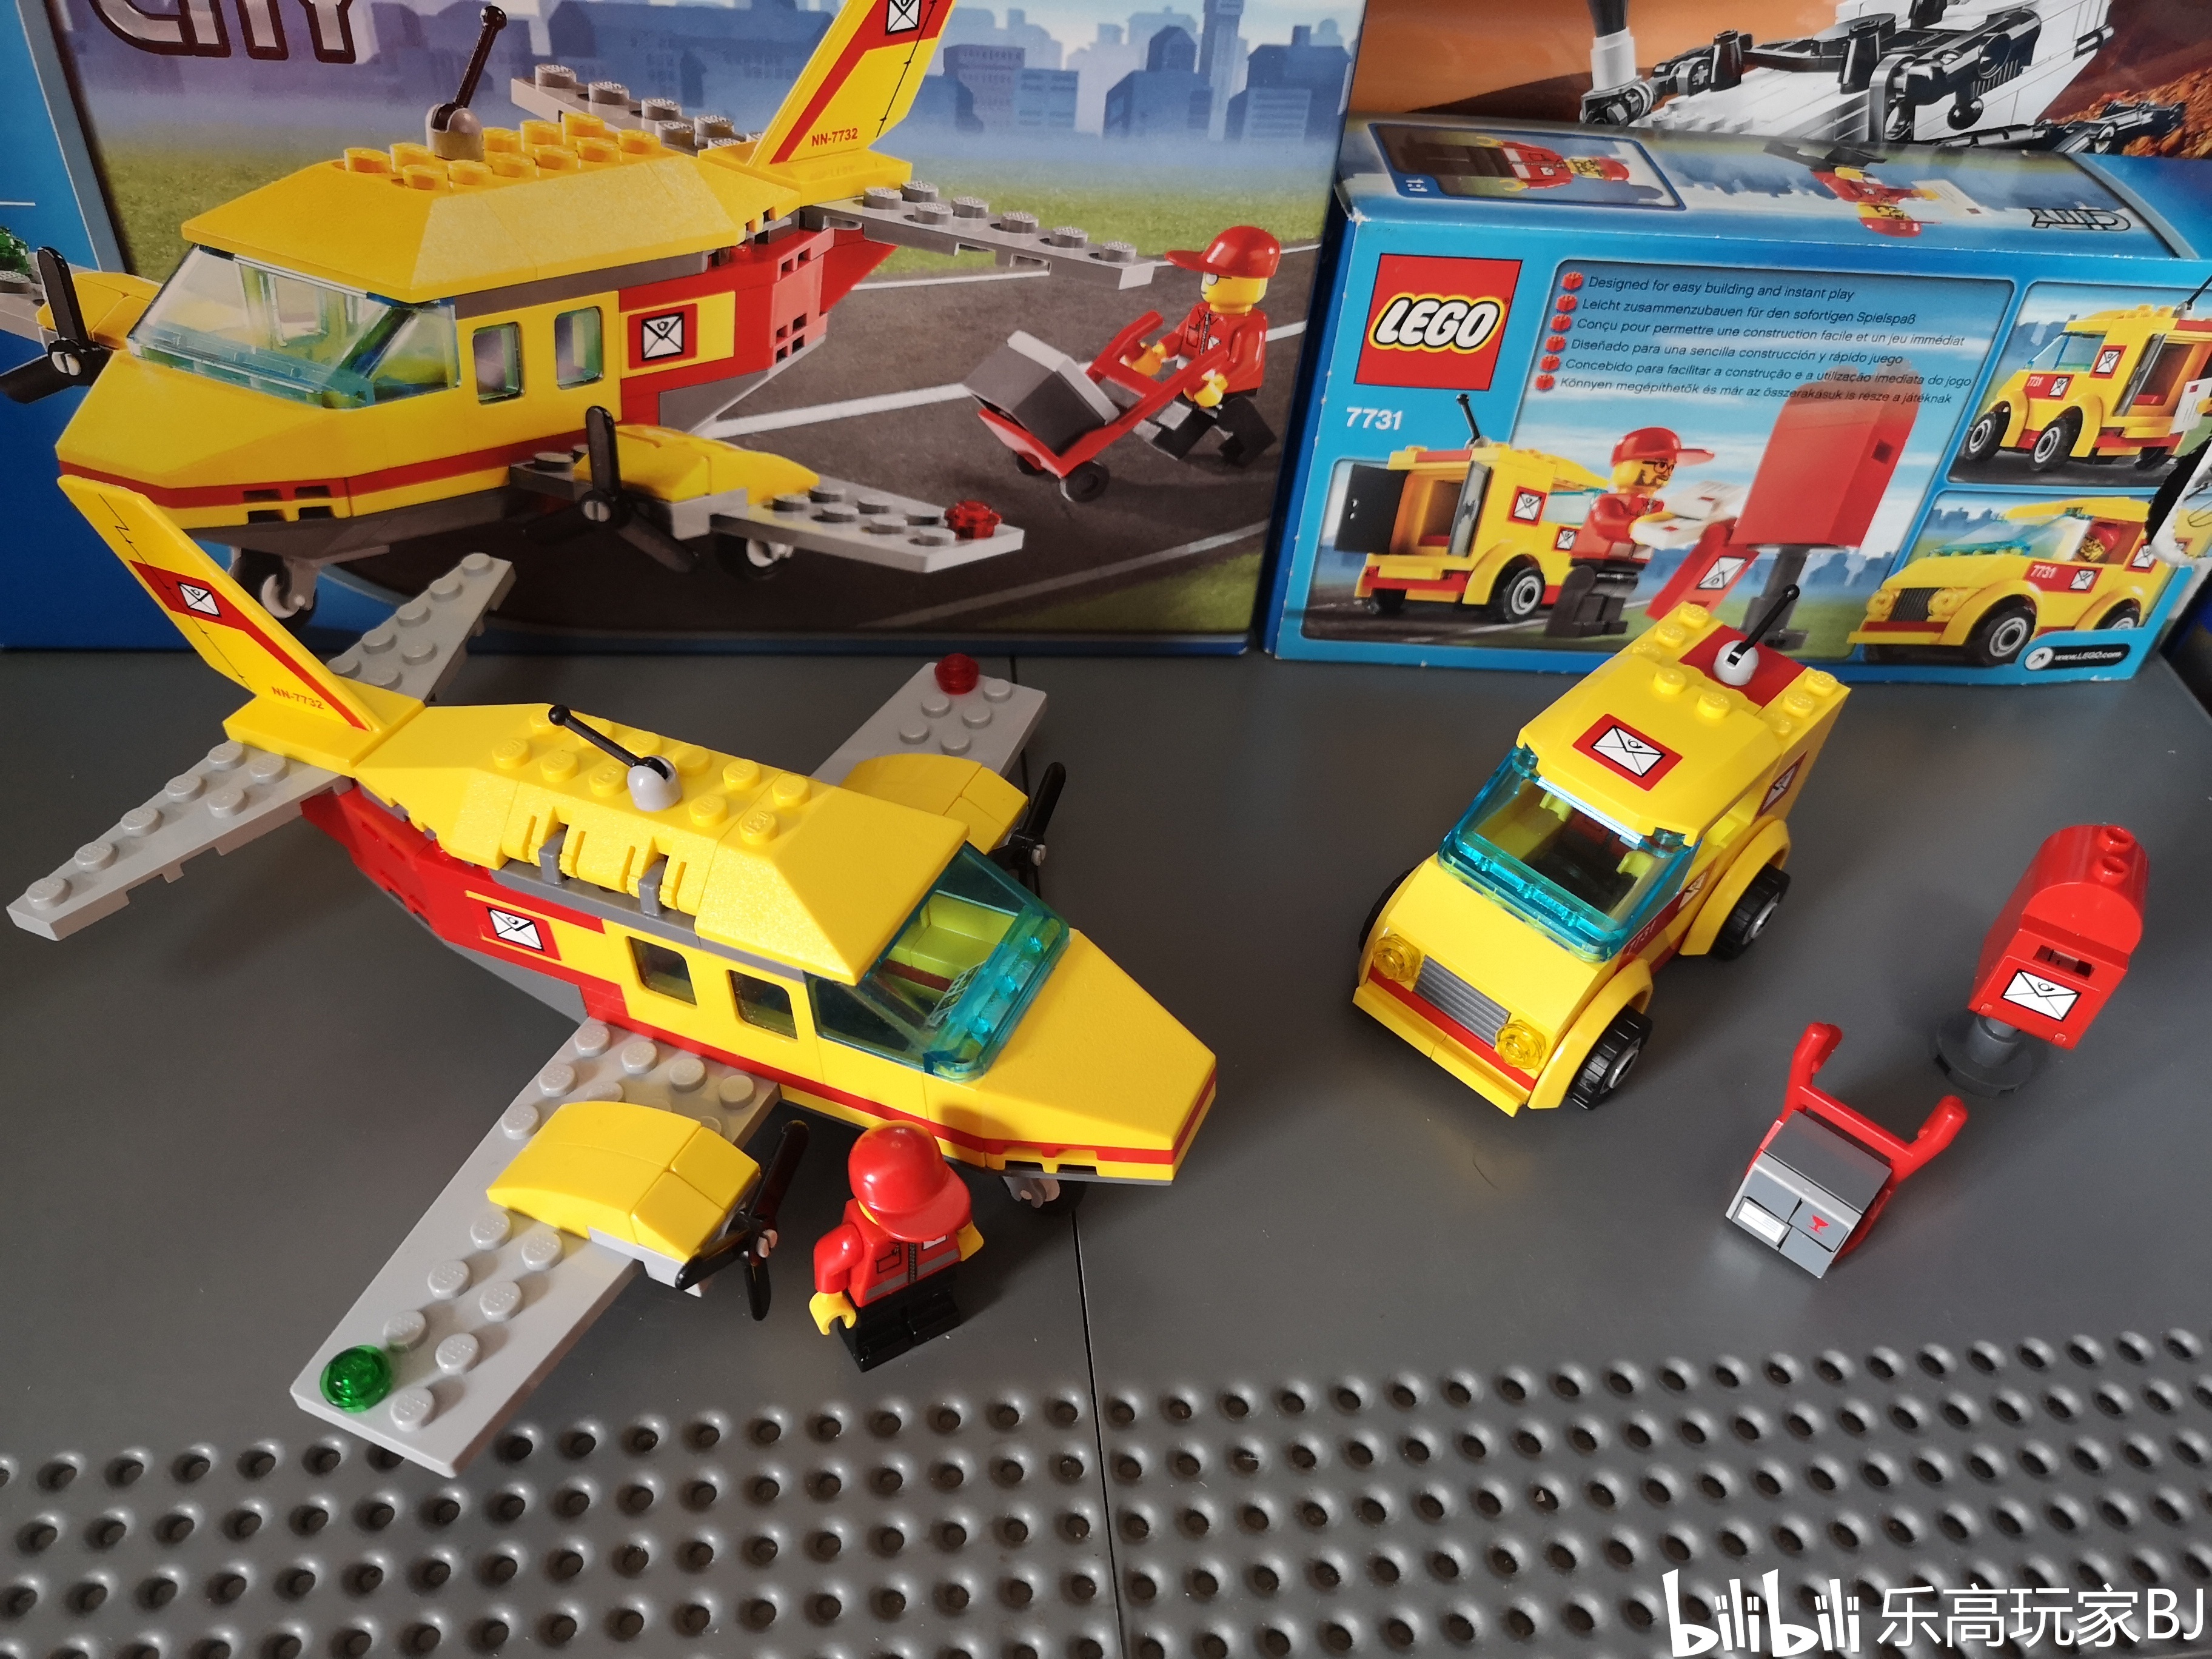 【玩家评测】乐高 lego 城市系列 7732 邮政飞机